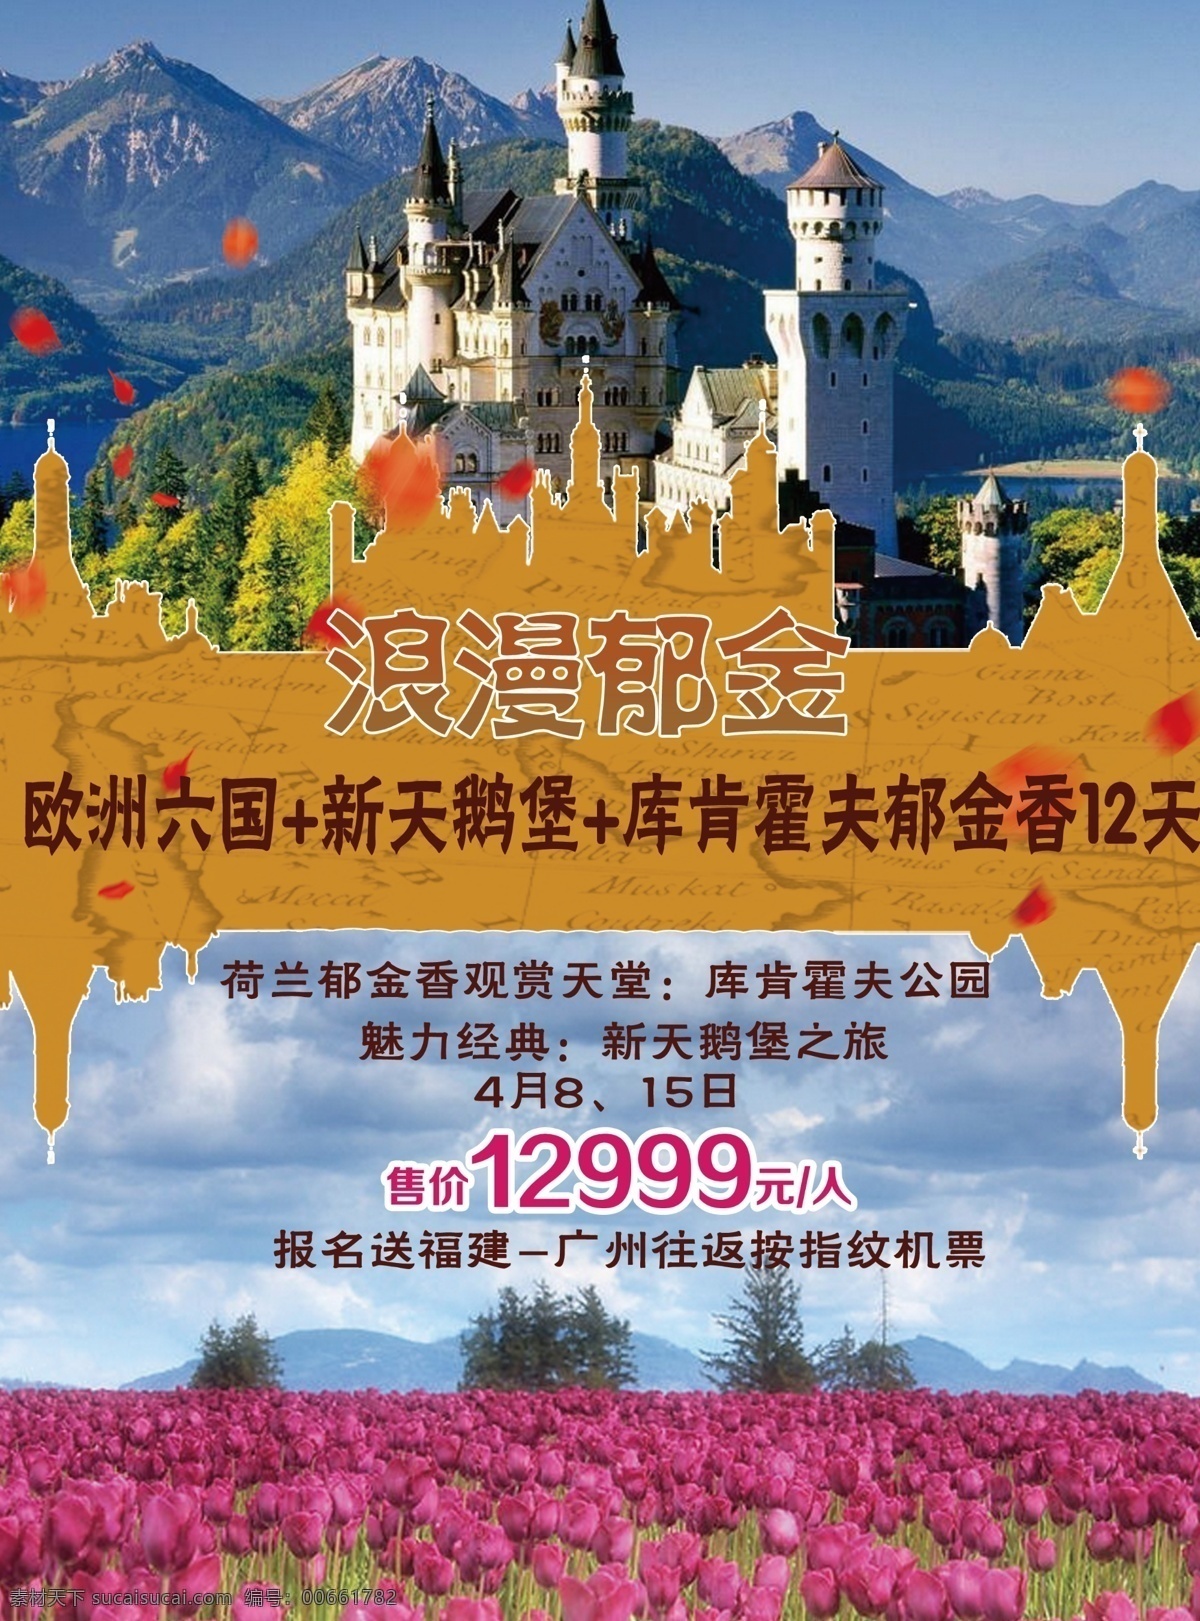 欧洲 郁金香 旅游 广告 六国 天鹅堡 城堡 简单 春季旅游 棕色